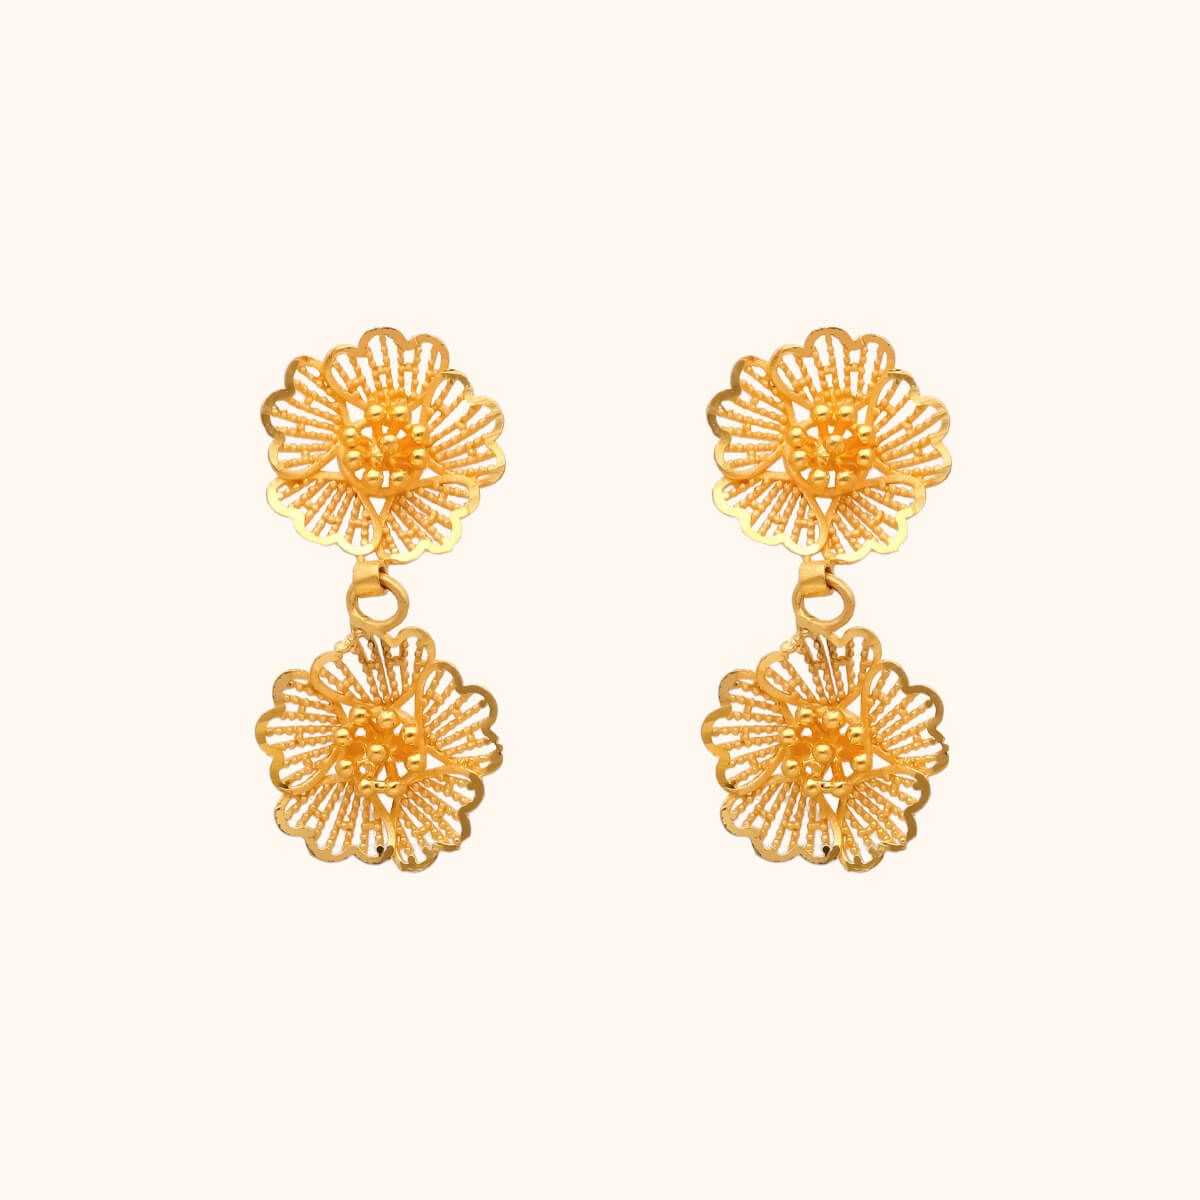 Gold Earrings for Women  Gold earrings for women Gold earrings designs  Indian gold jewellery design